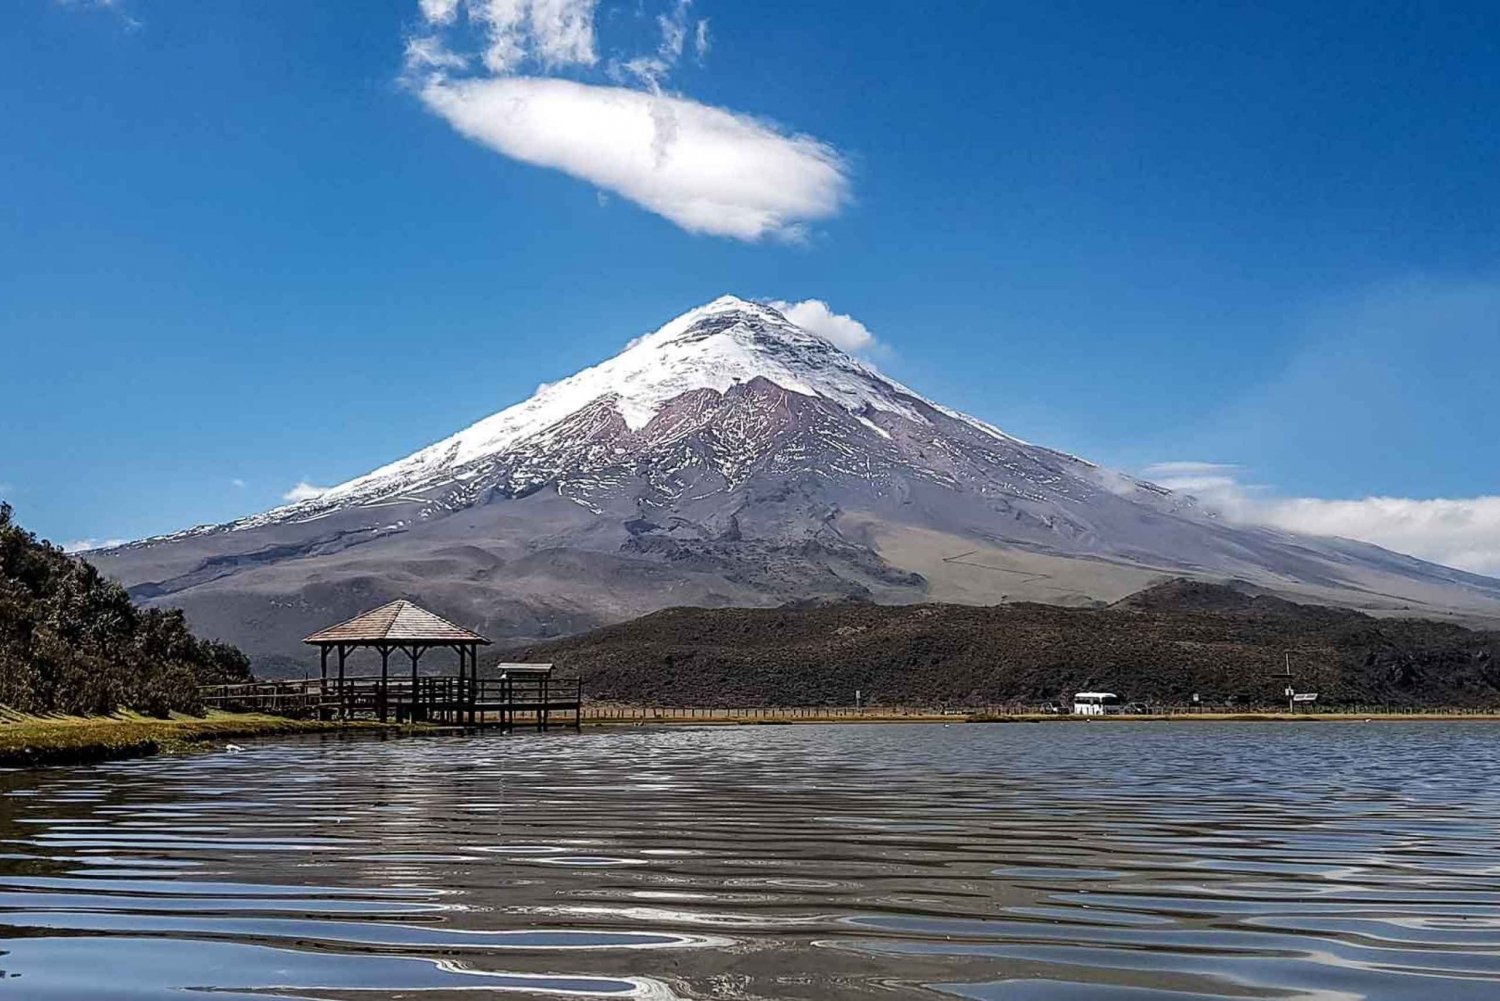 Von Quito aus: Cotopaxi und Baños Tour an einem Tag - alles inklusive